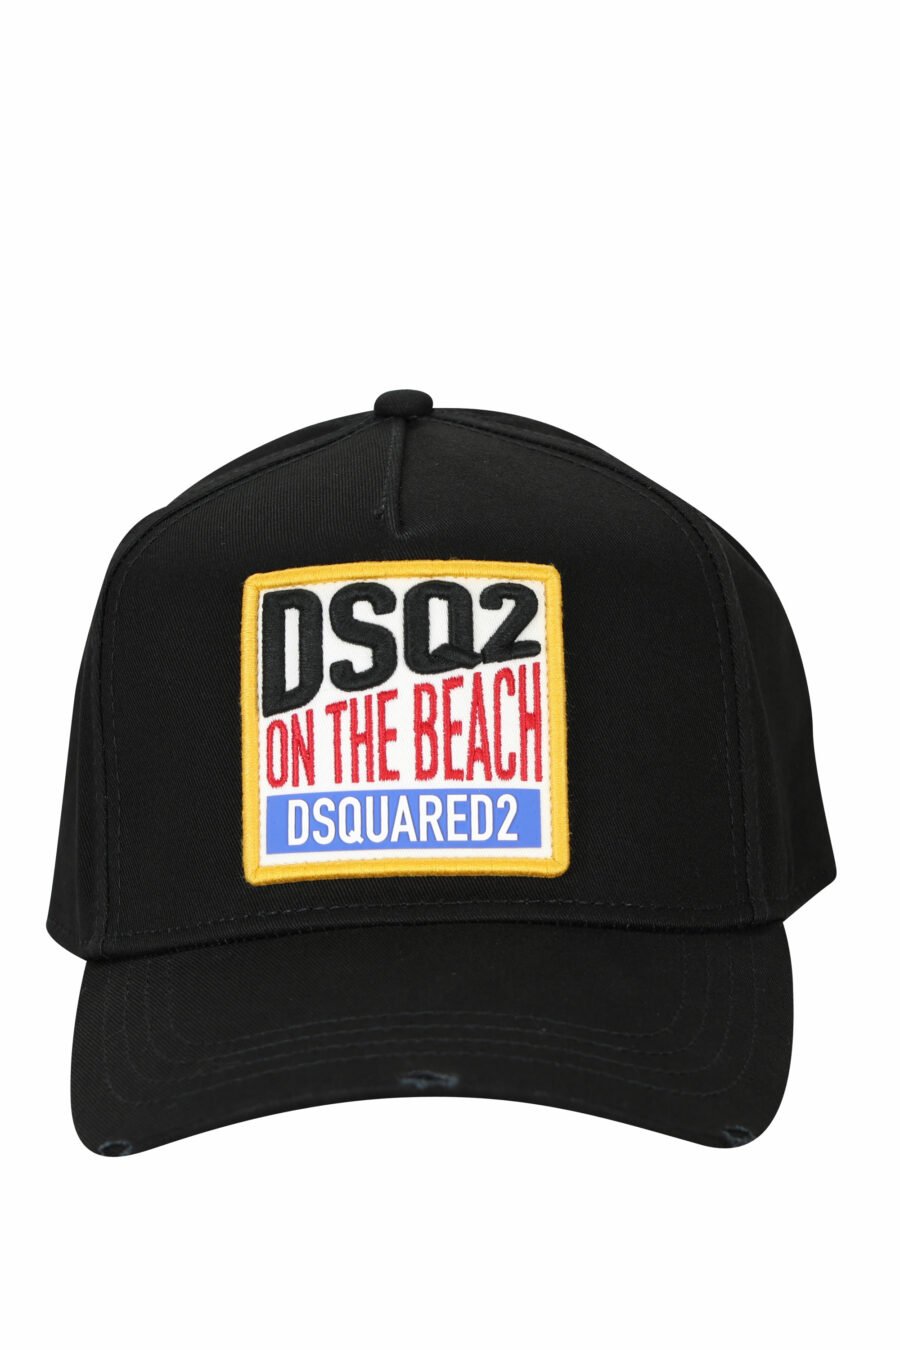 Casquette noire avec boîte "Dsq2 on the beach" - 8055777286838